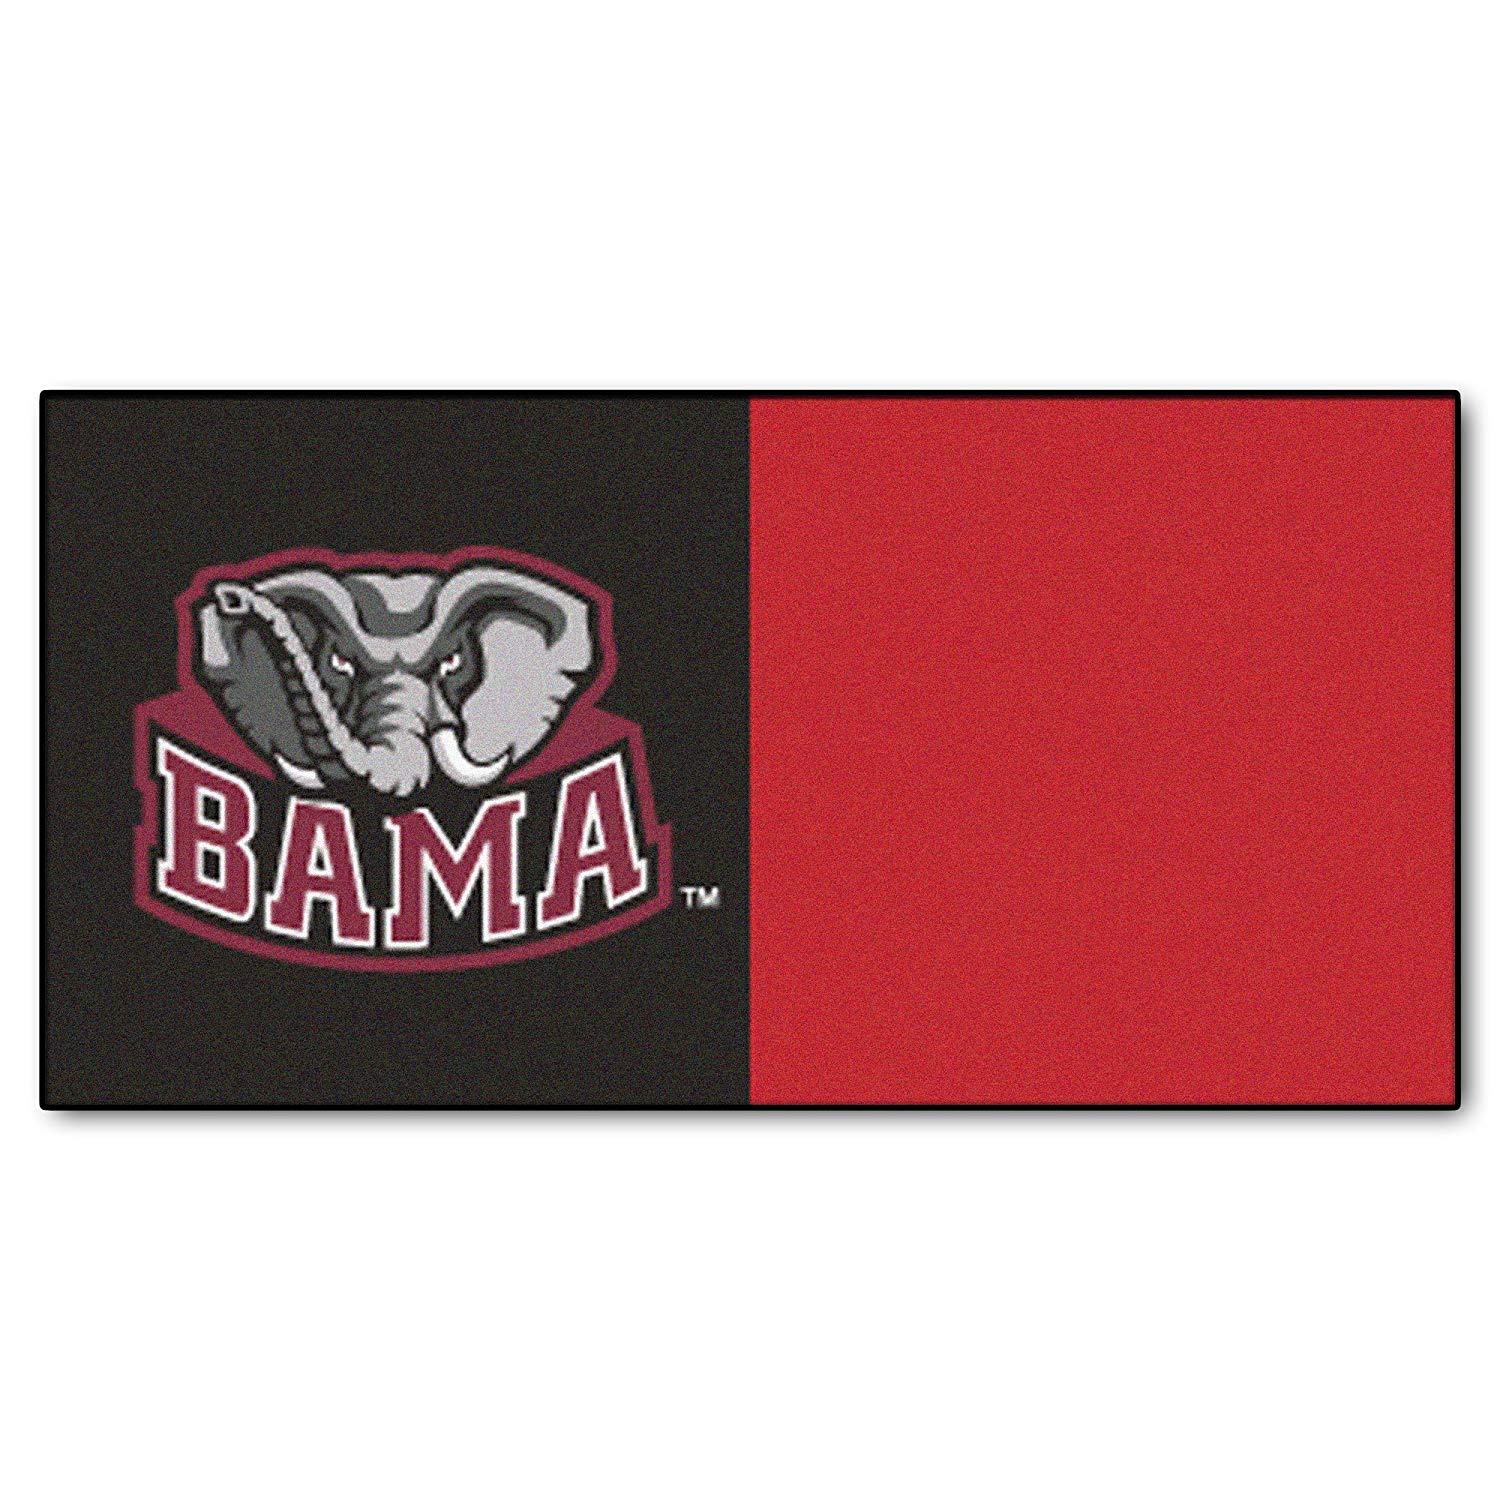 Bama Logo - Amazon.com : University of Alabama Carpet Tiles (Bama Logo) : Sports